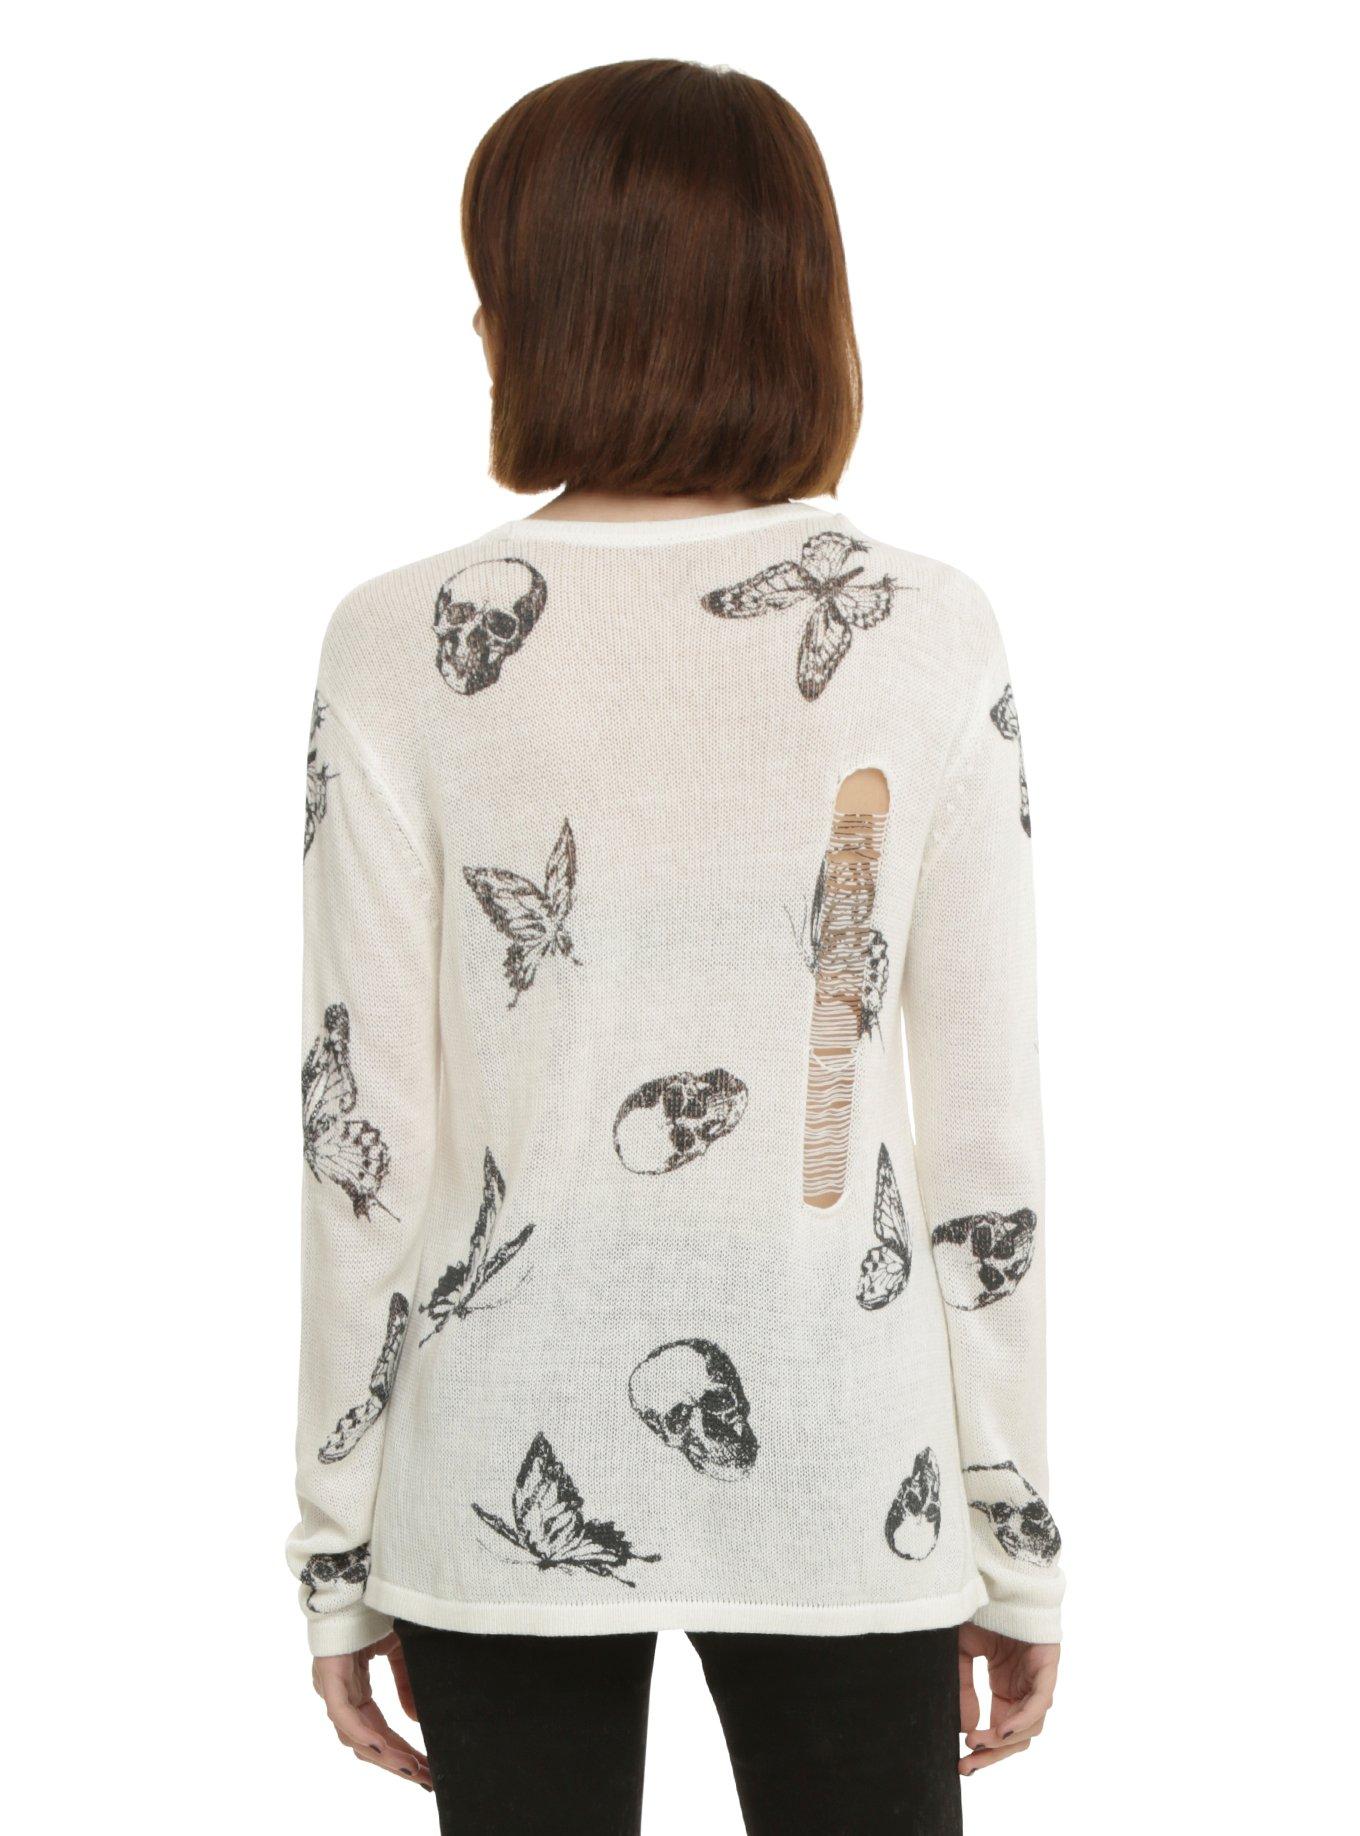 Ivory Skull & Butterfly Girls Sweater, , alternate